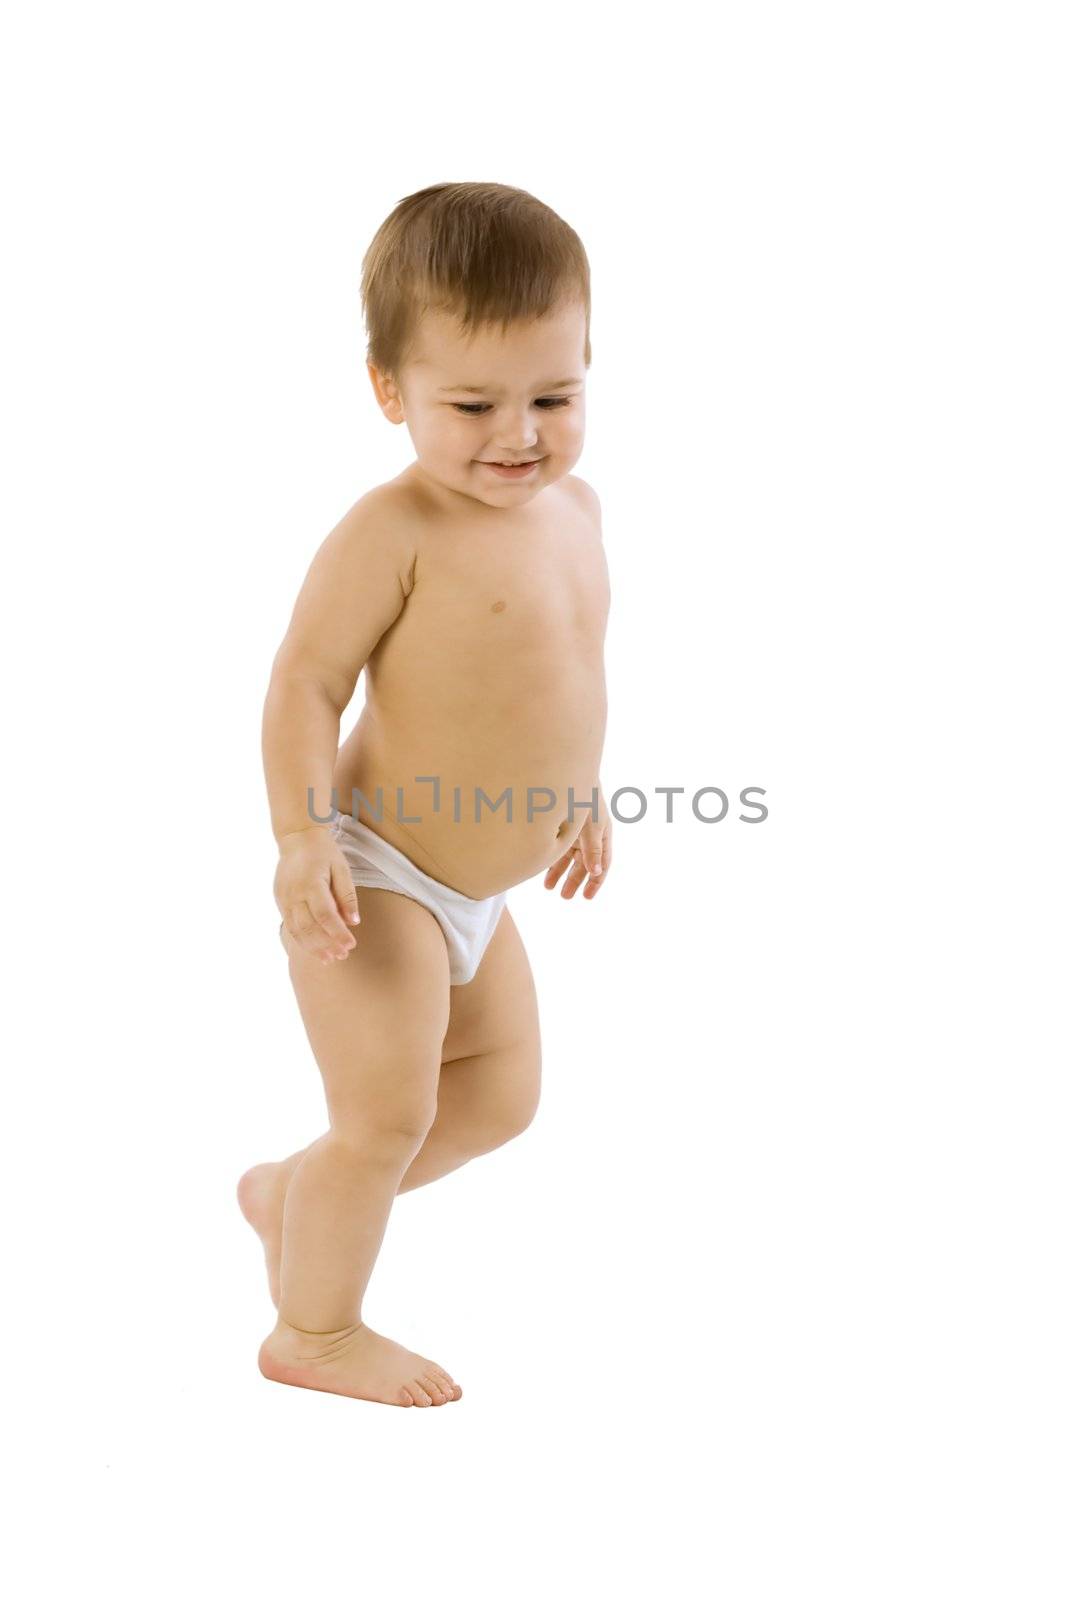 An isolated photo of a running joyful child